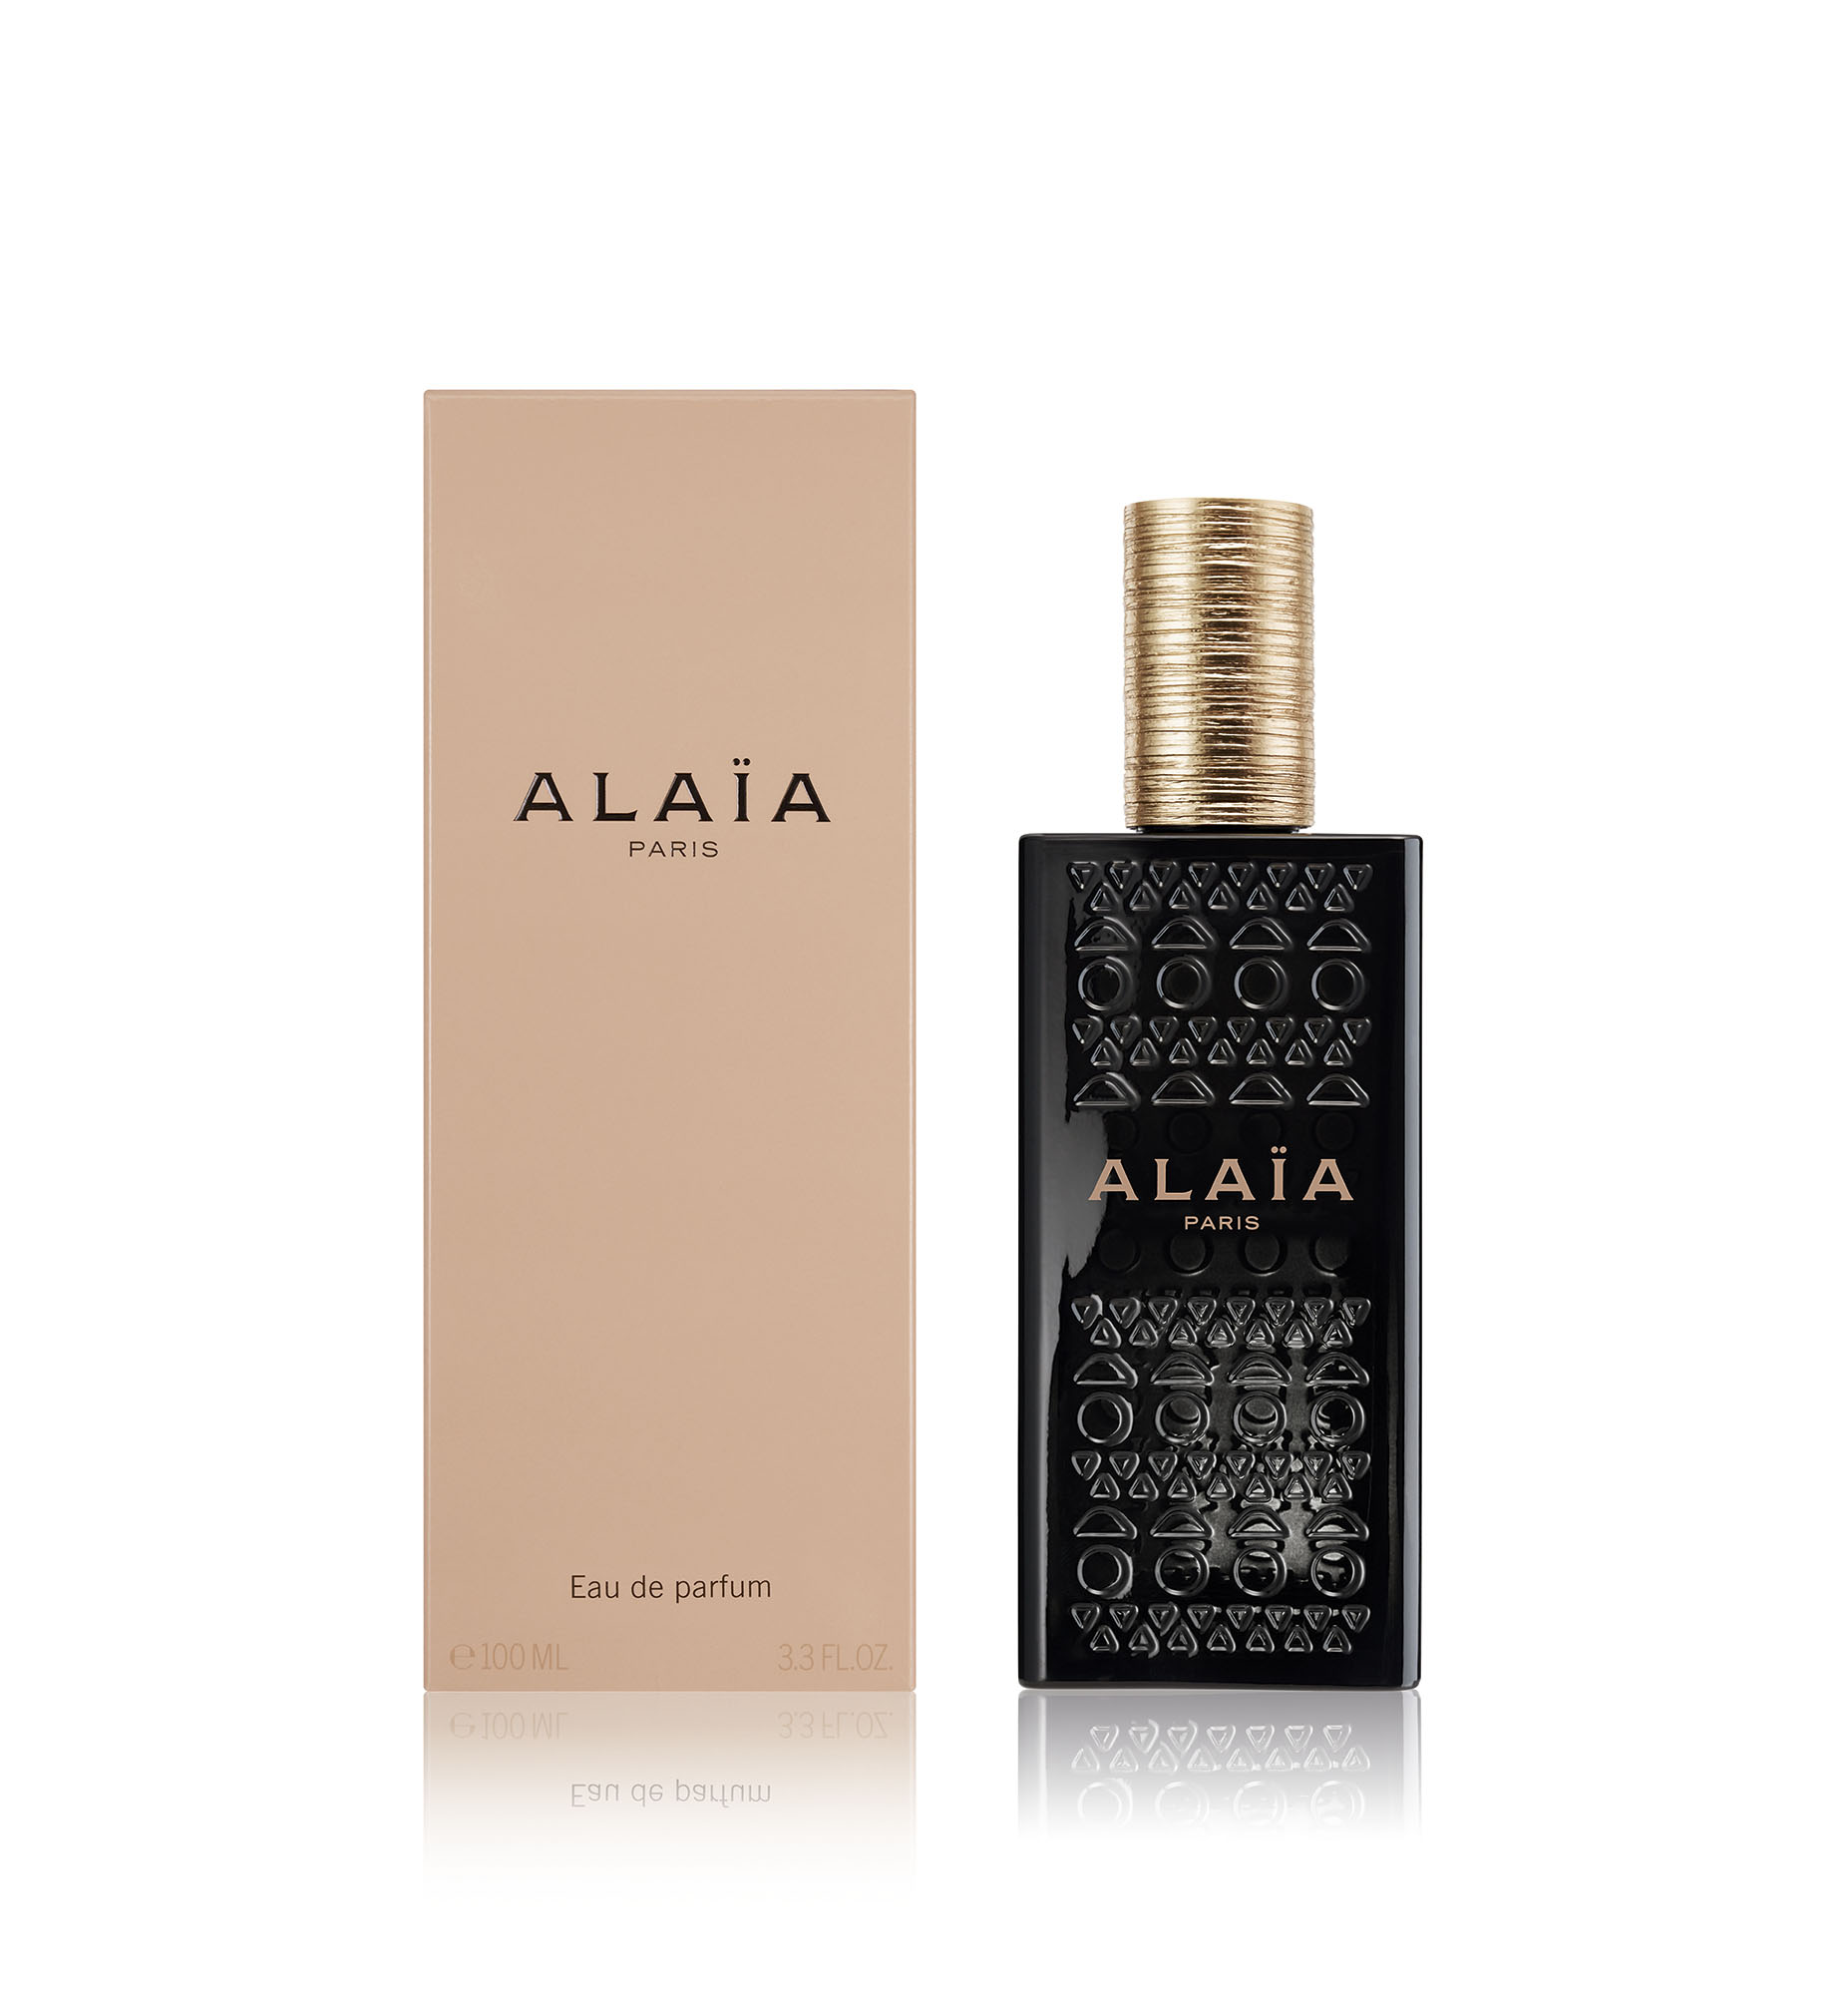 Le parfum 2016 : Eau de parfum Alaïa, Azzedine Alaïa - Les meilleurs produits de beauté de l